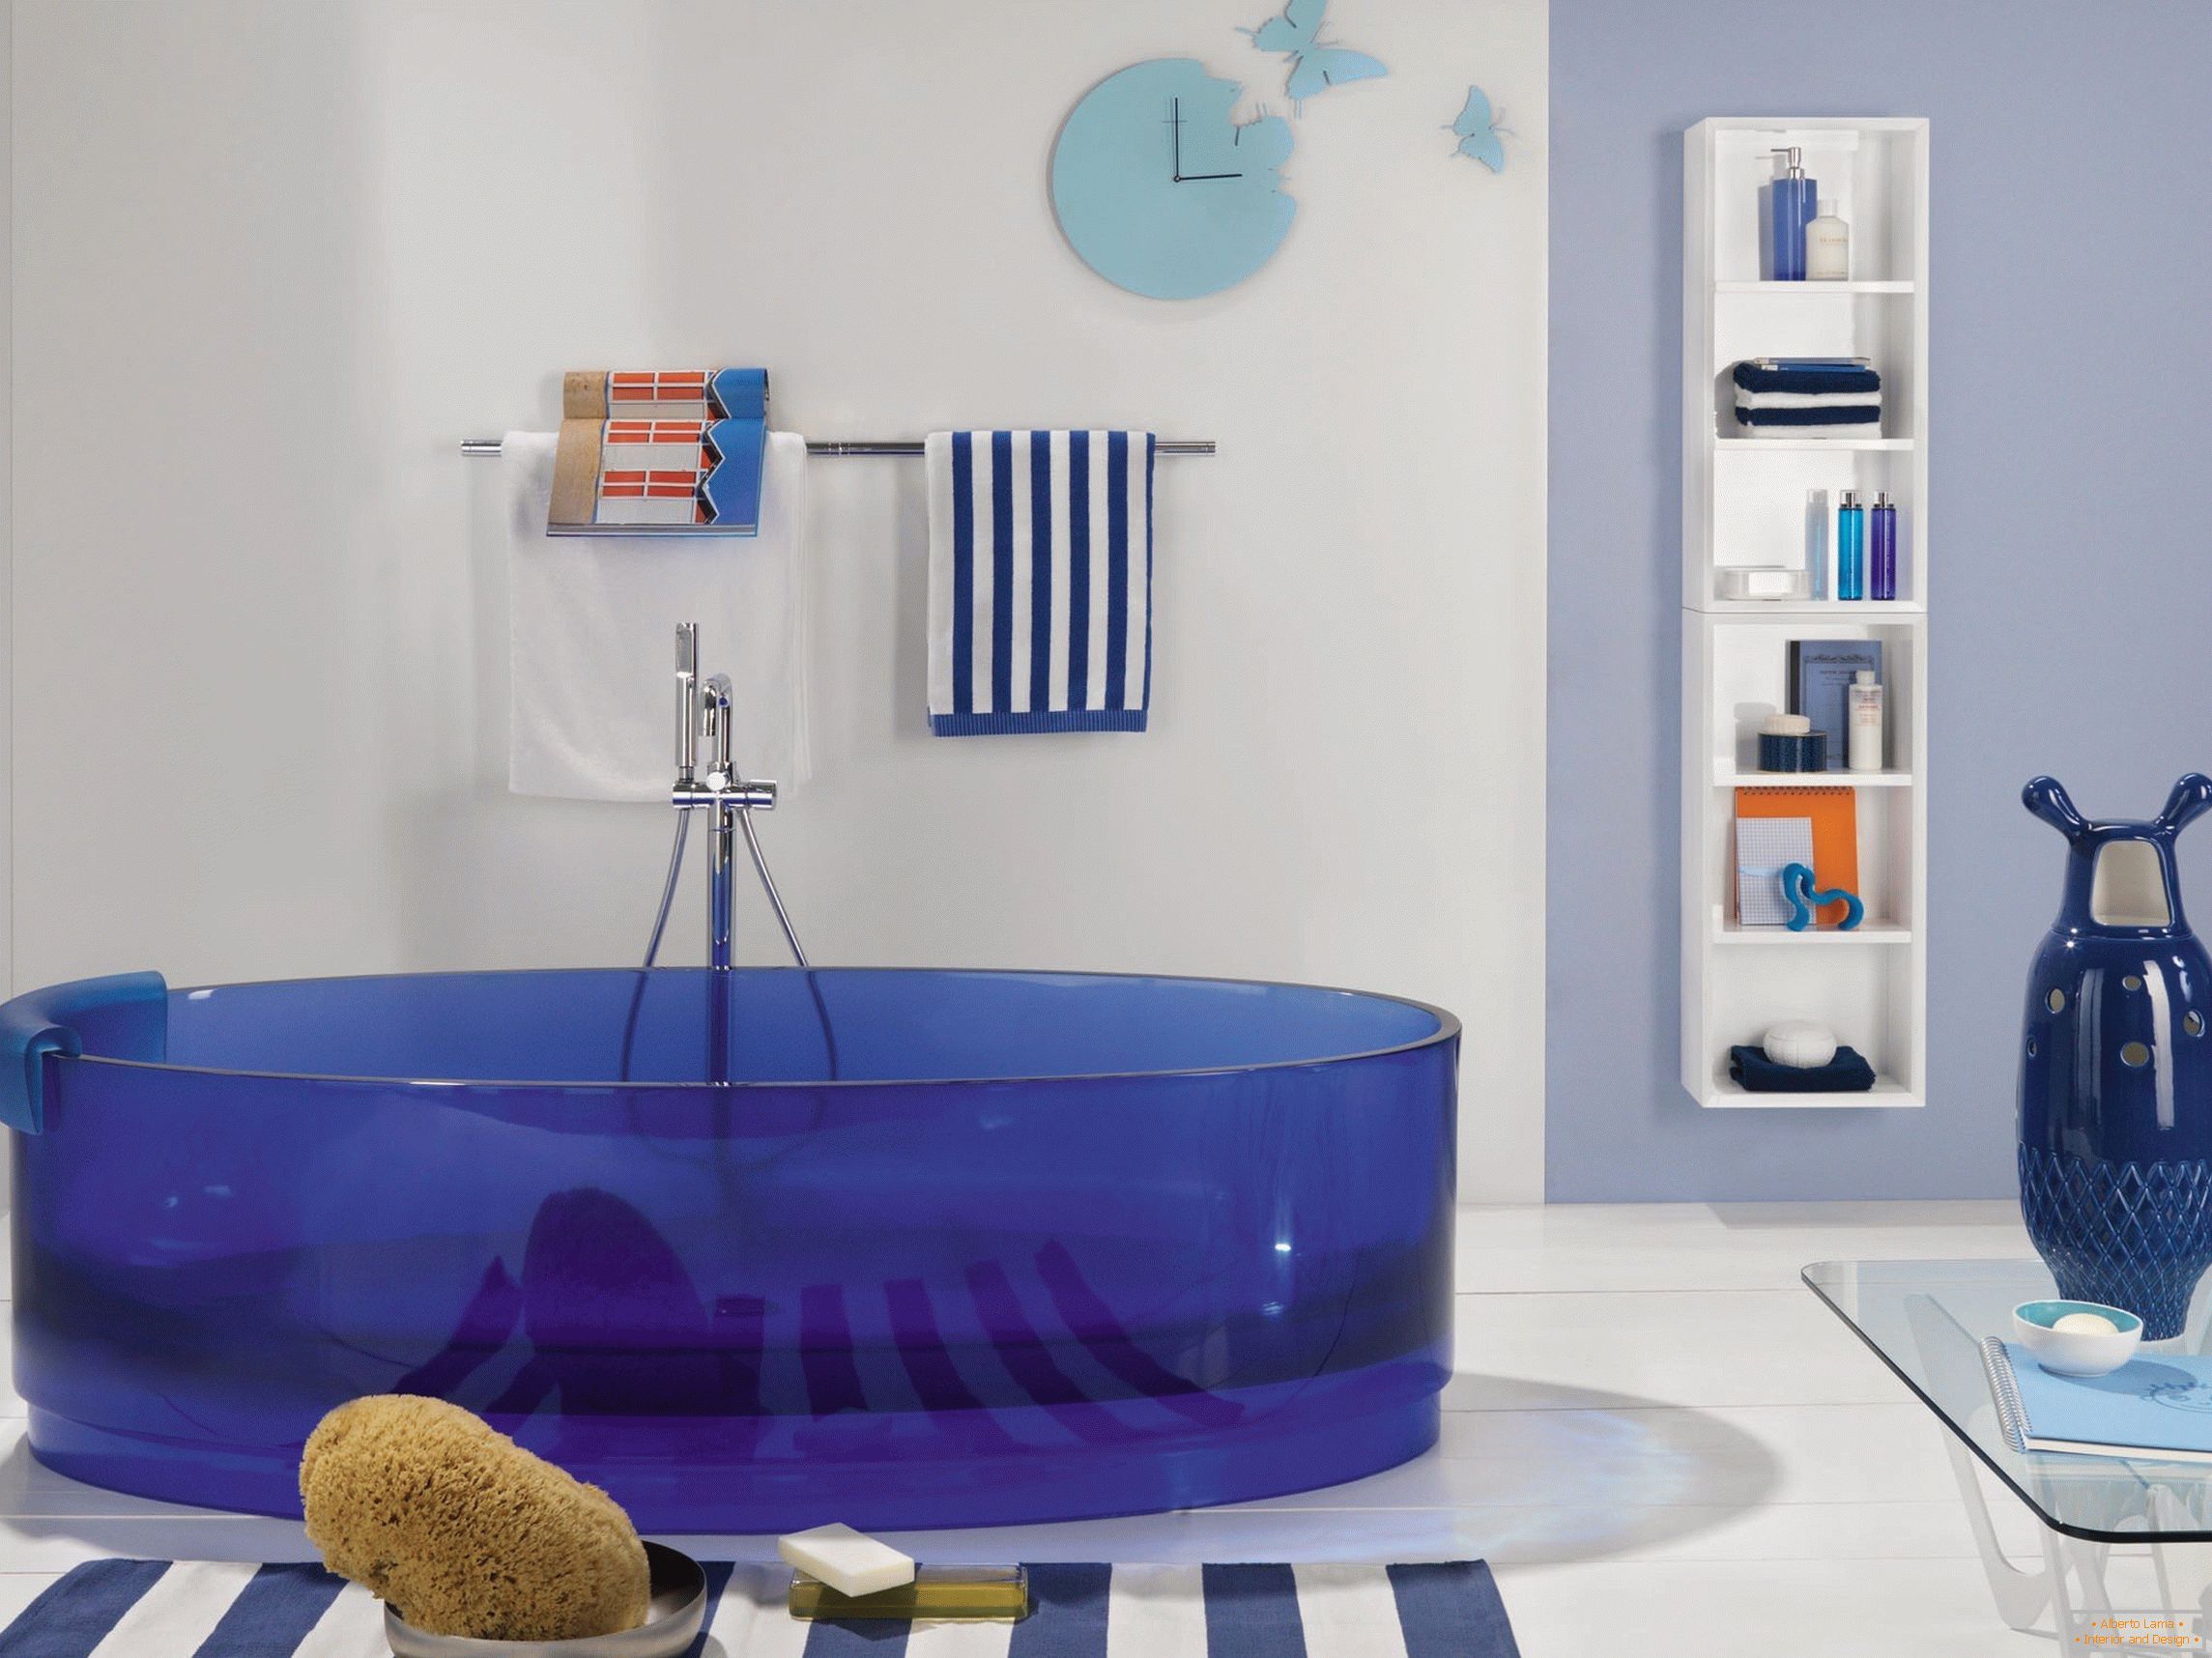 Kúpeľ v modrých farbách